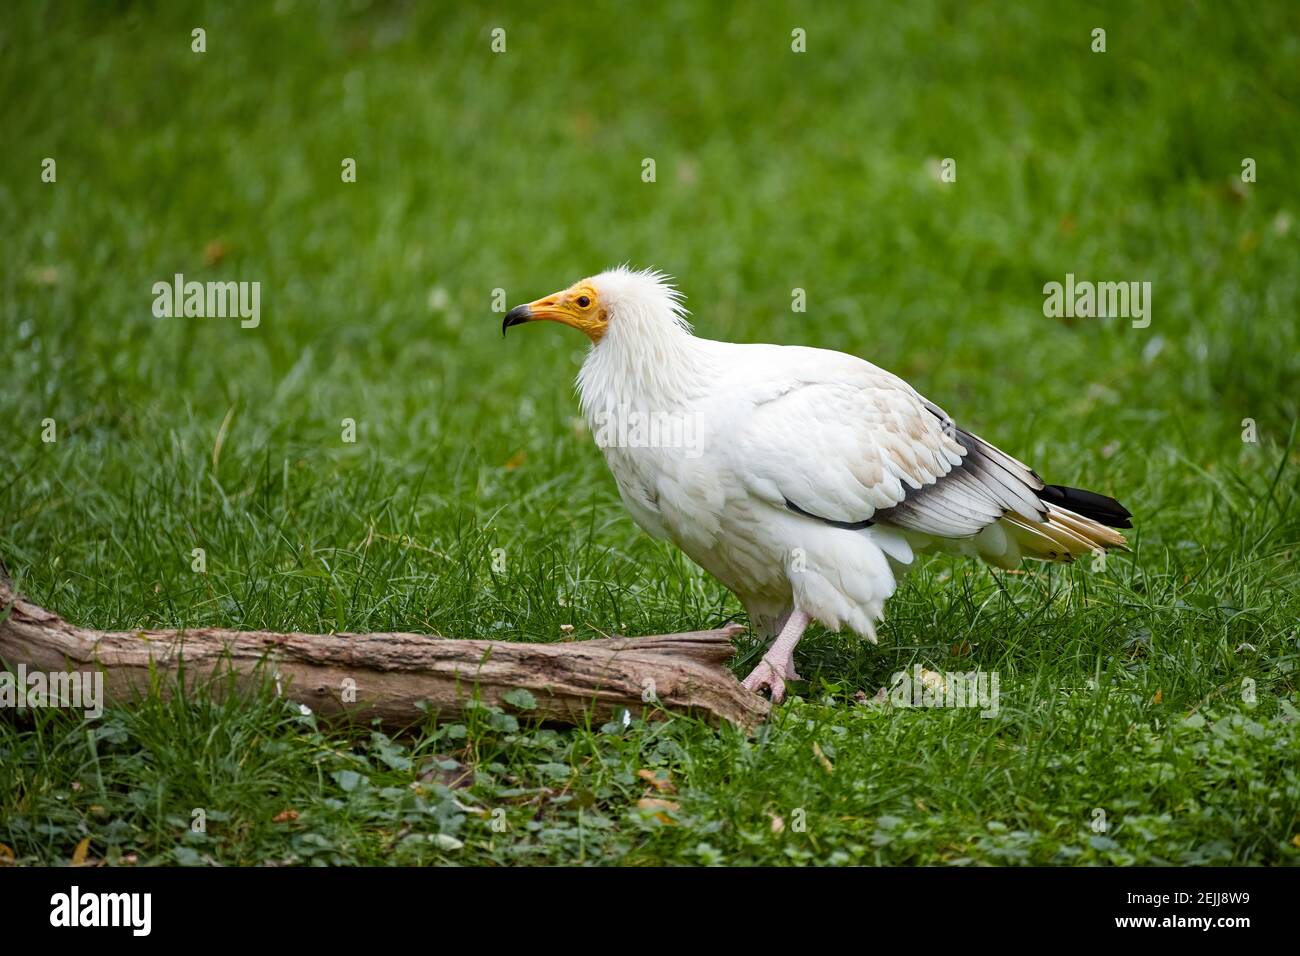 Avvoltoio egiziano, Neophron percnopterus, avvoltoio bianco con becco giallo, in piedi su prato verde. Vista laterale, uccello di preda in pericolo. Sud Foto Stock